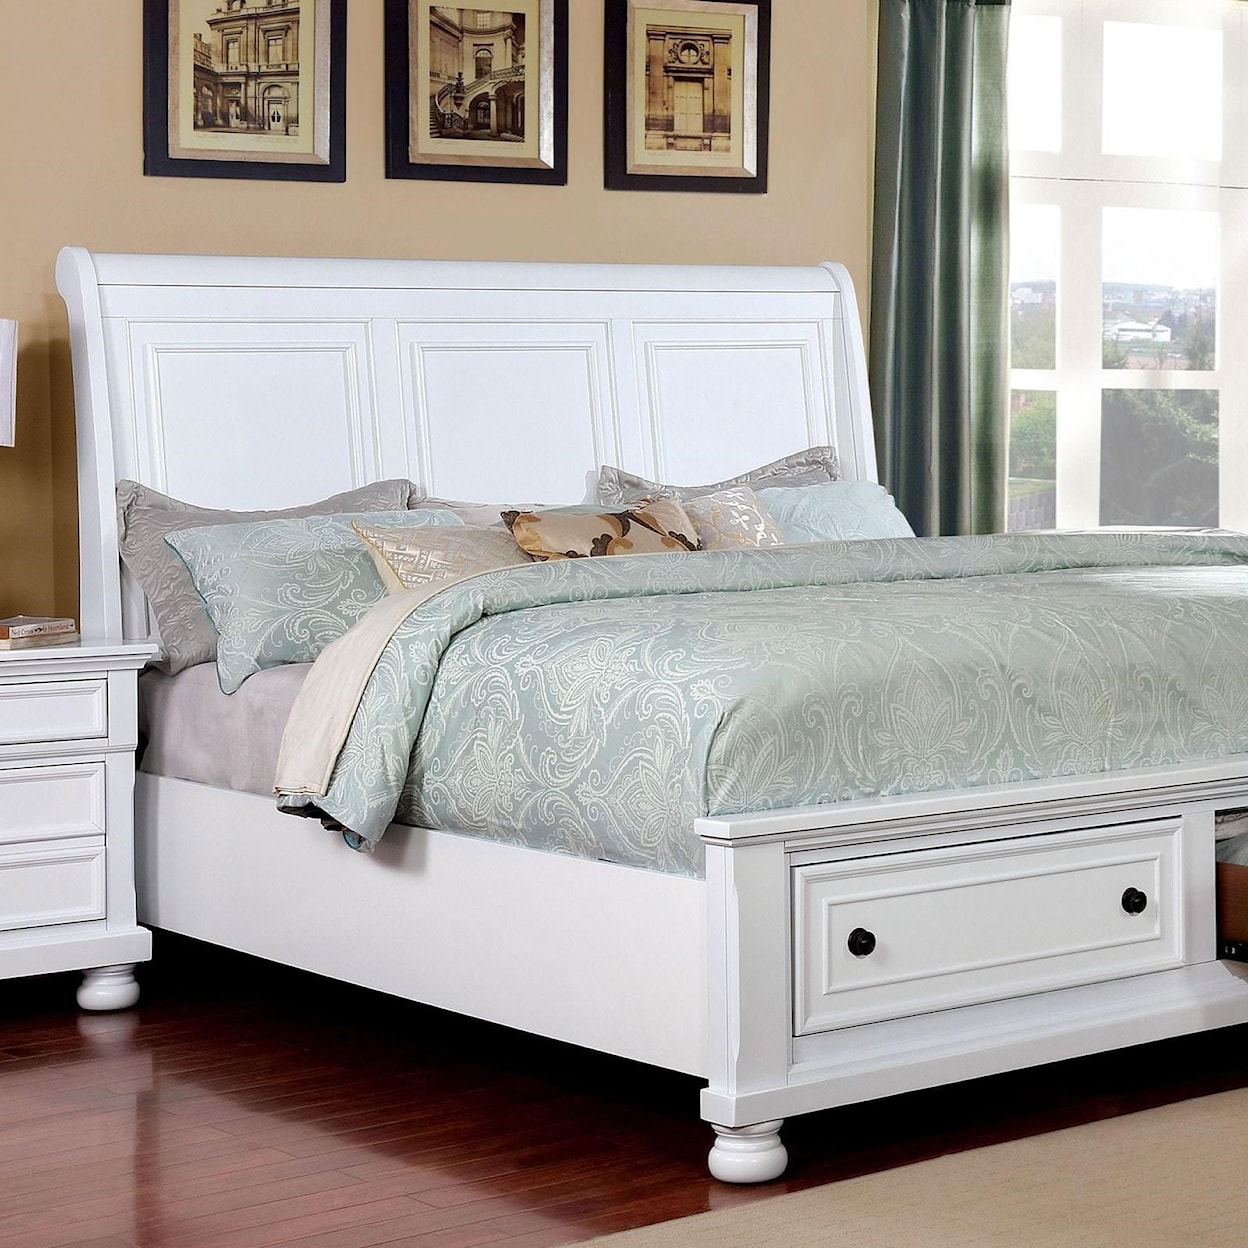 Furniture of America Castor Queen Bed